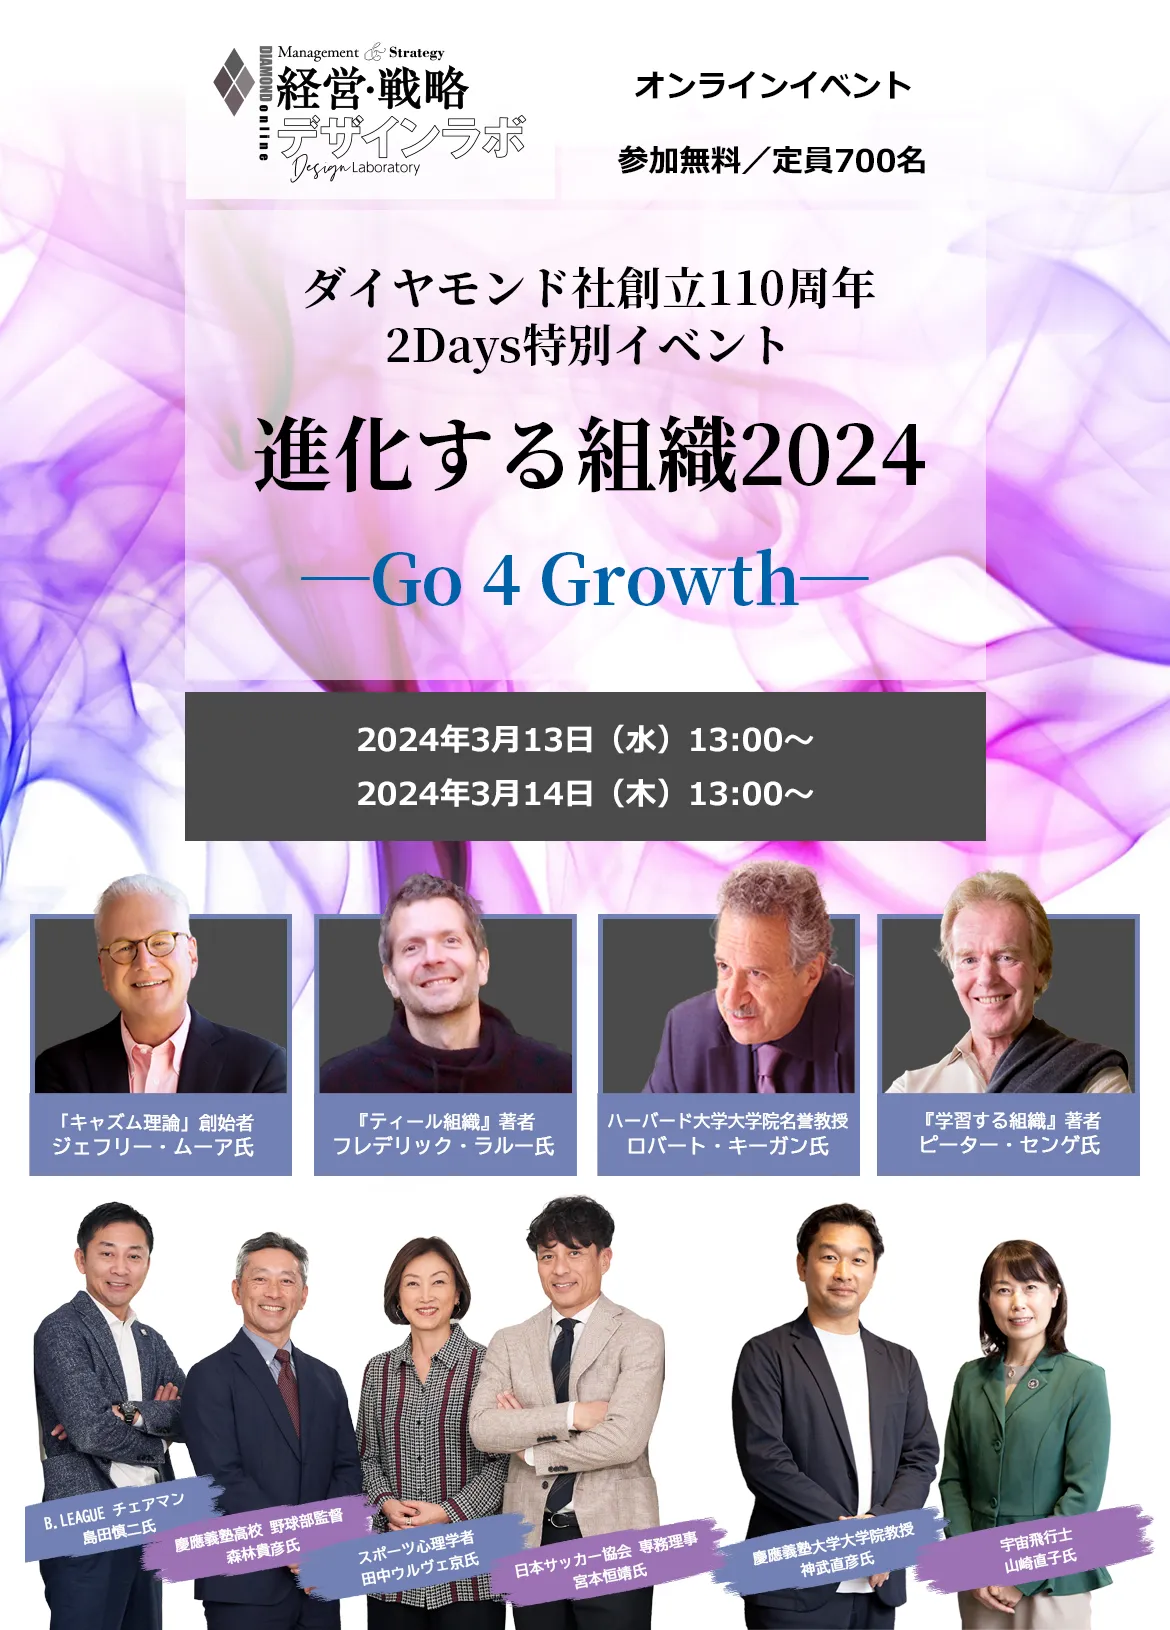 経営・戦略デザインラボ 2Days特別イベント 進化する組織2024 ―Go 4 Growth―